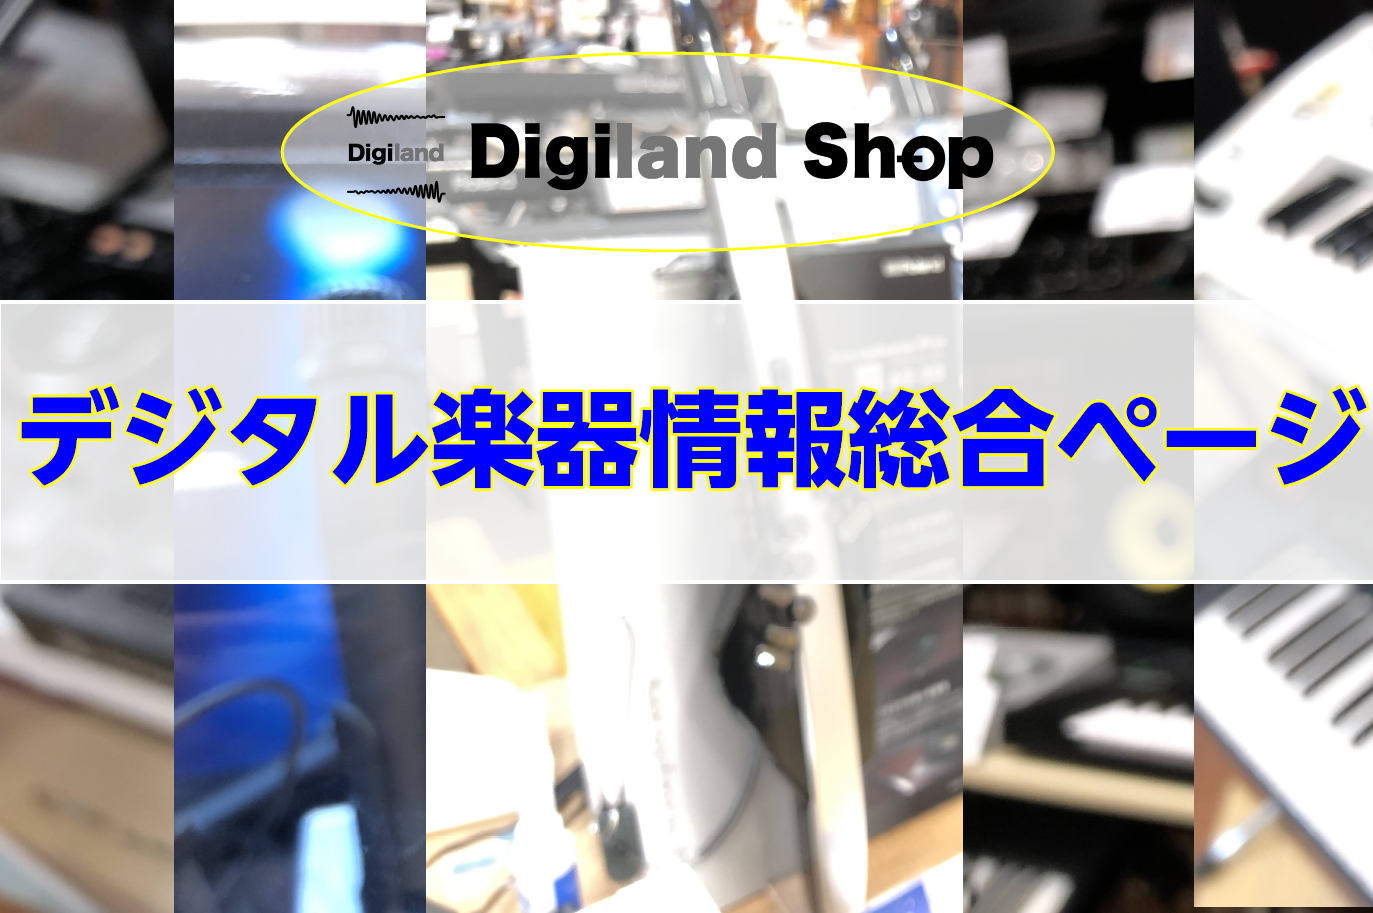 【5/15DTM情報総合ページ更新】 [https://info.shimamura.co.jp/digital/?_ga=2.133126285.2010036049.1537243379-1134851827.1537243379:title=] Digiland Shop担当の佐久間です！ 「 […]